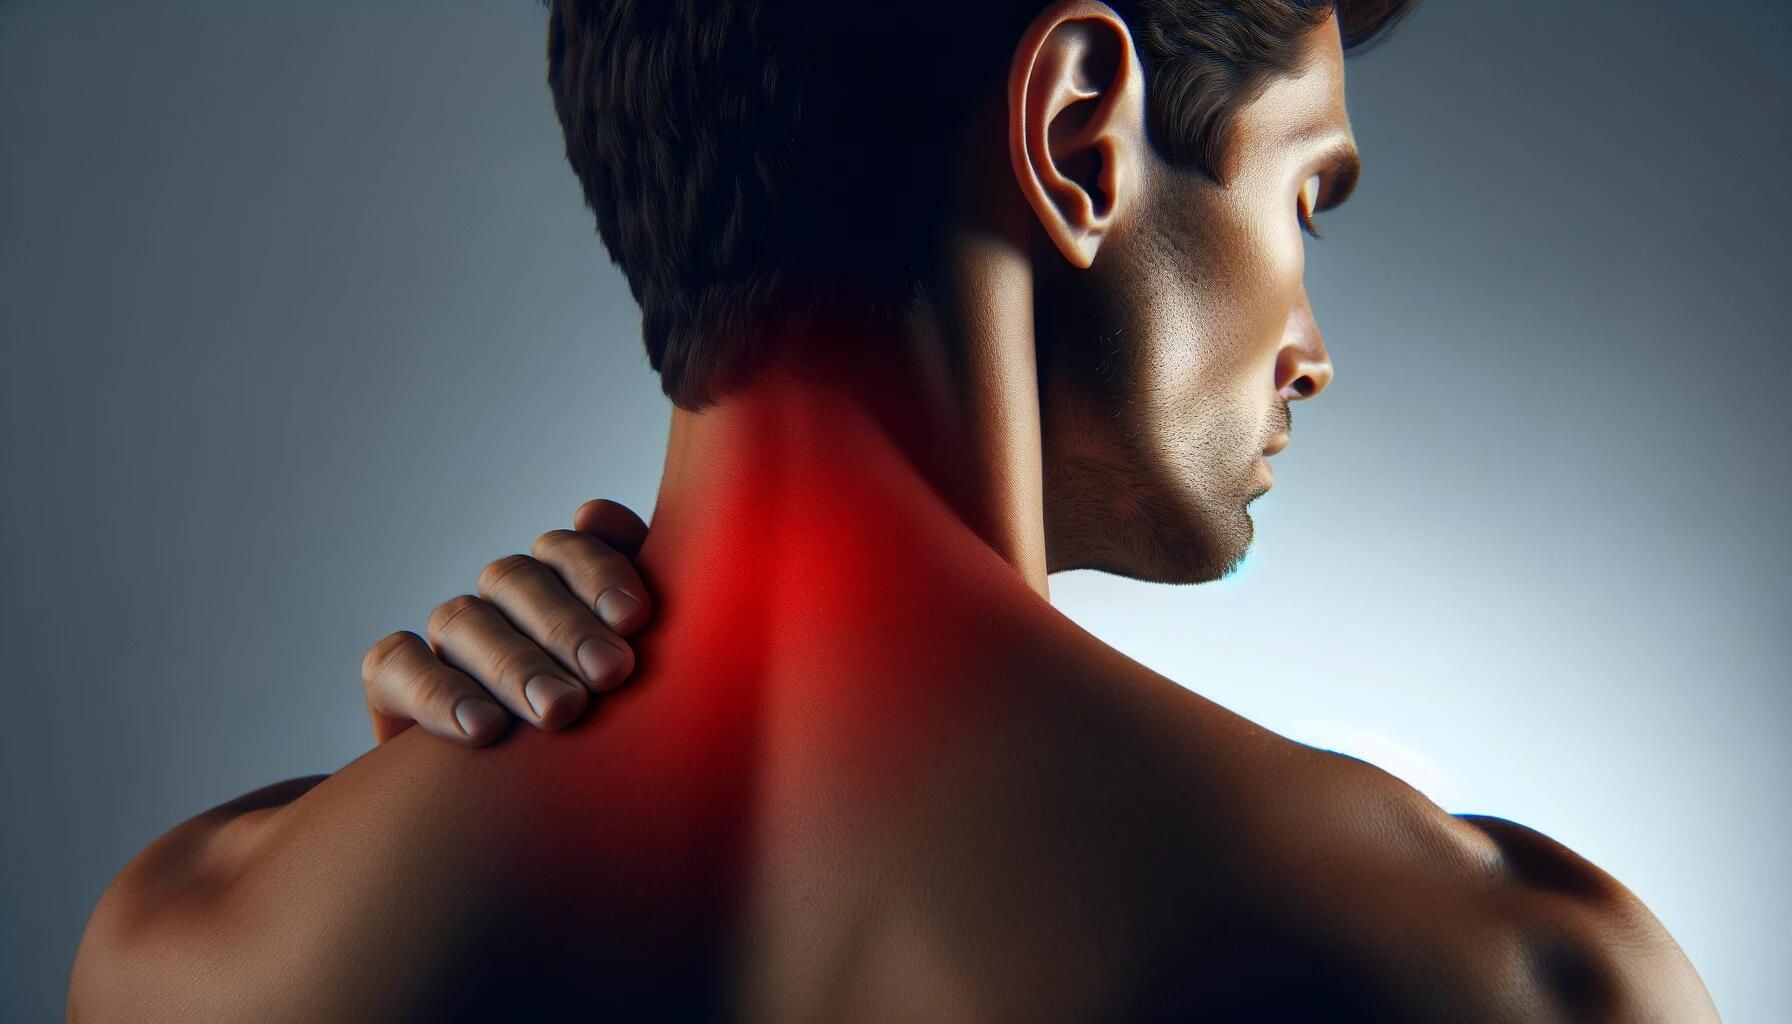 Imagen detallada de un cuello resaltado en rojo, evidenciando dolor muscular. Representación visual de contracturas por estrés, postura inadecuada y falta de movilidad. Importante recordatorio sobre cuidado, salud y la necesidad de ejercicio. (Imagen ilustrativa Infobae)